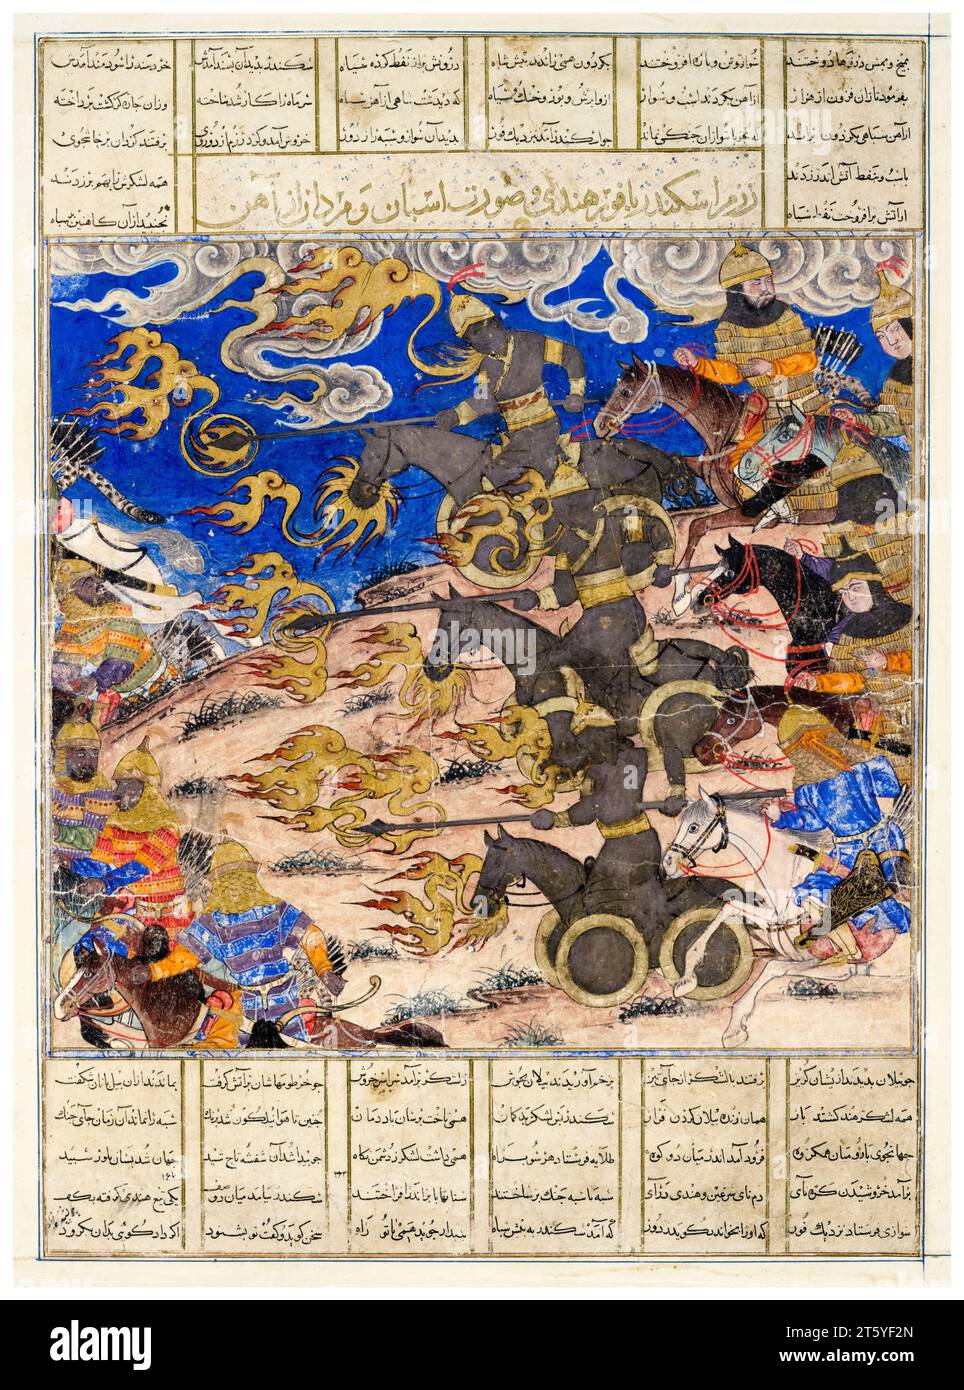 Art persan du 14e siècle, bataille de la cavalerie de fer d'Iskandar le roi fur de Hind (du Grand Ilkhanid Shahnama), peinture manuscrite enluminée à l'aquarelle avec or et argent, vers 1335 Banque D'Images